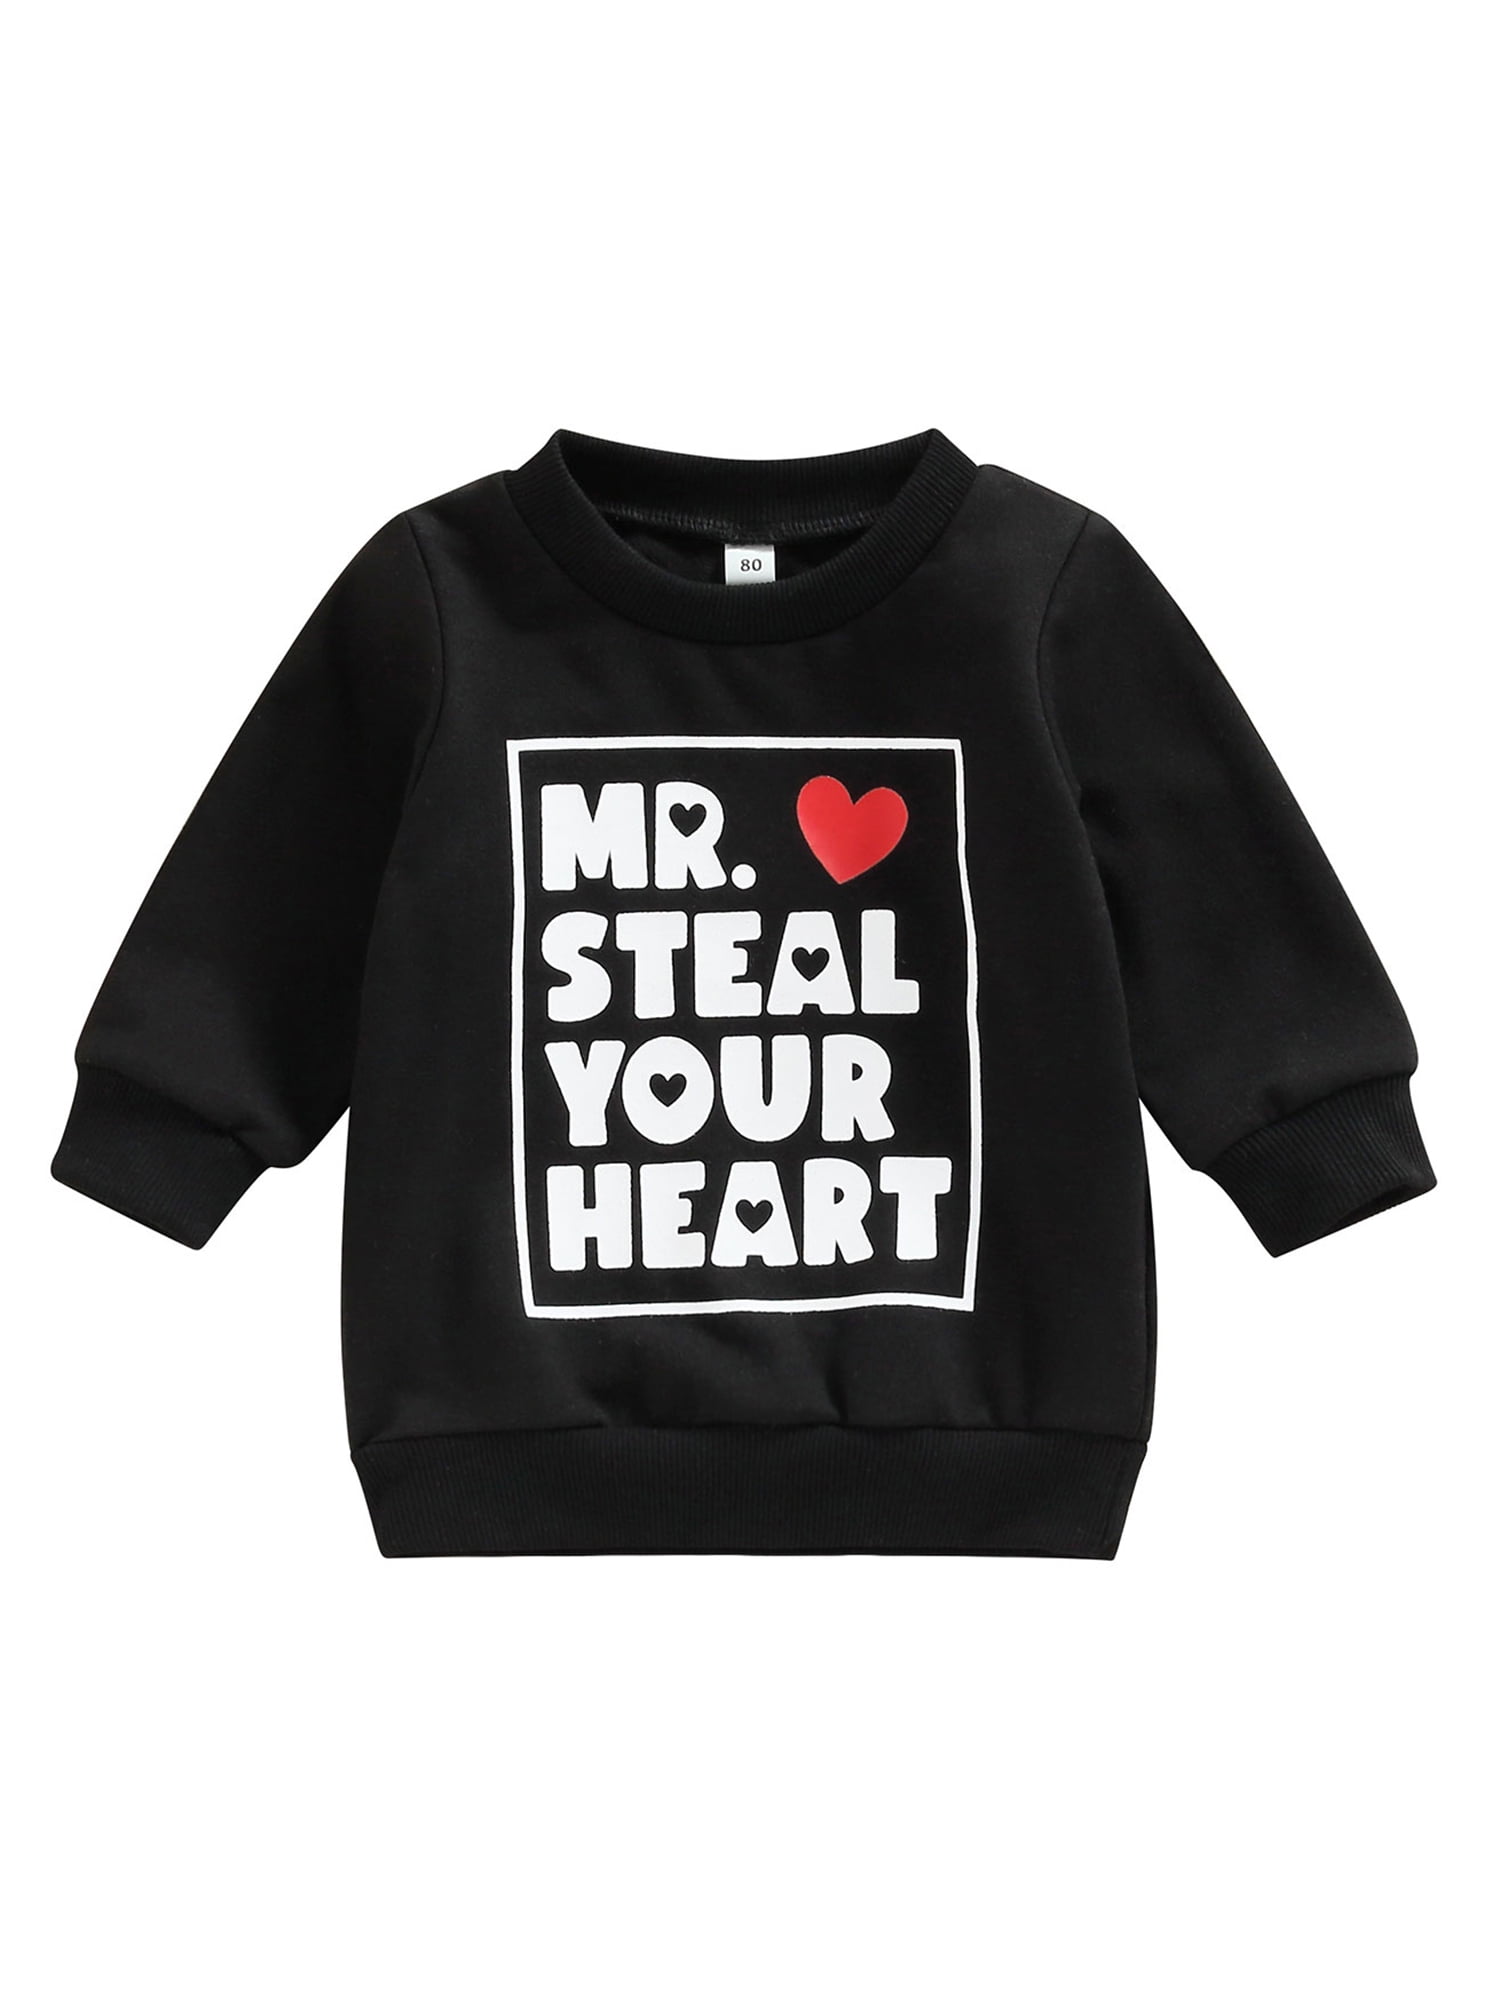 Aunavey Toddler Baby Boys Girls Valentine's Day Sweatshirt MR. Steal ...